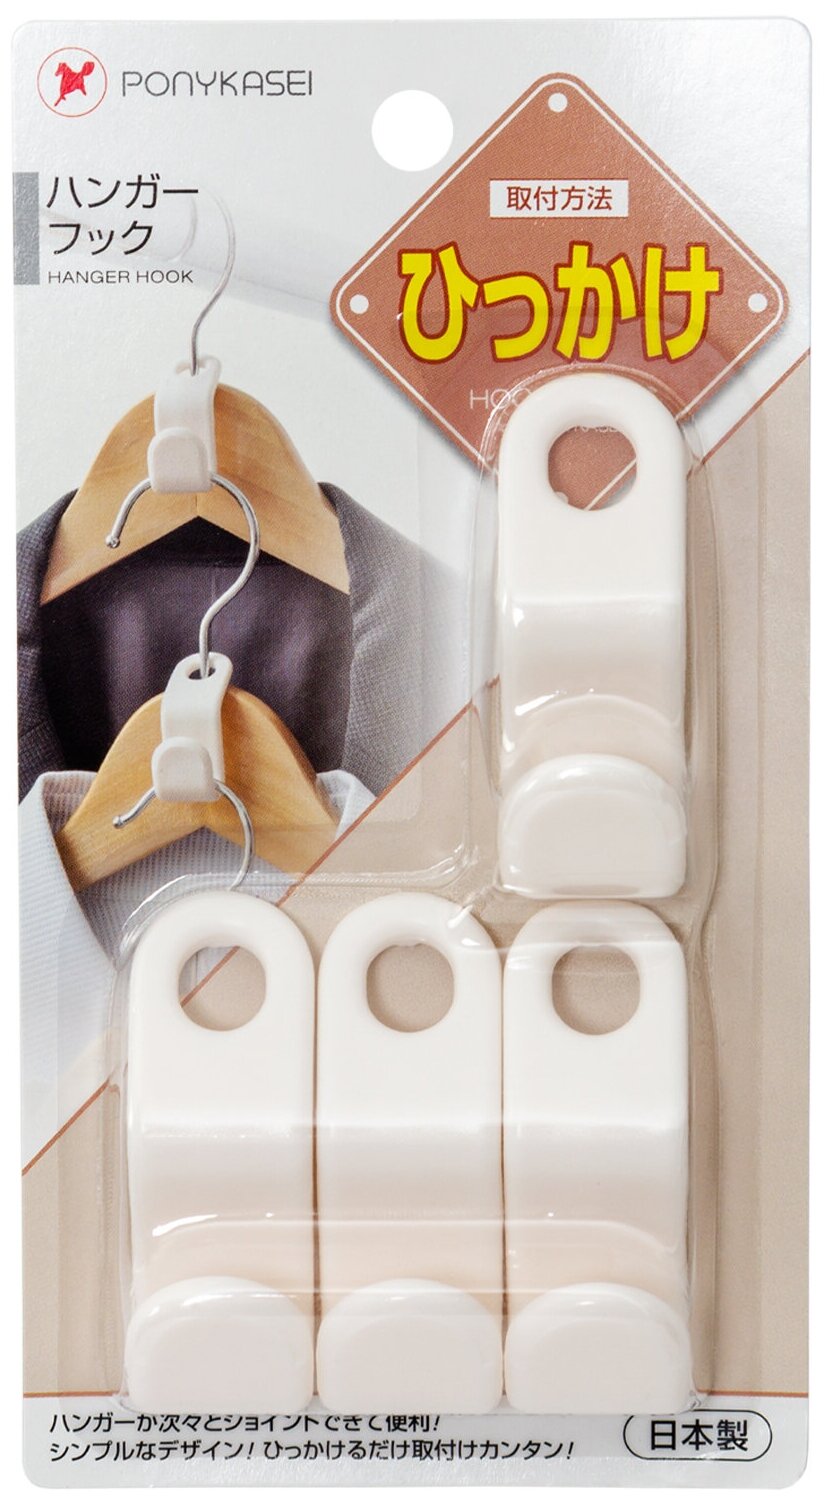 Набор крючков для вешалок / соединители для вешалок плечиков 4 шт 5,2*1,9*2,2 см Pony Kasei